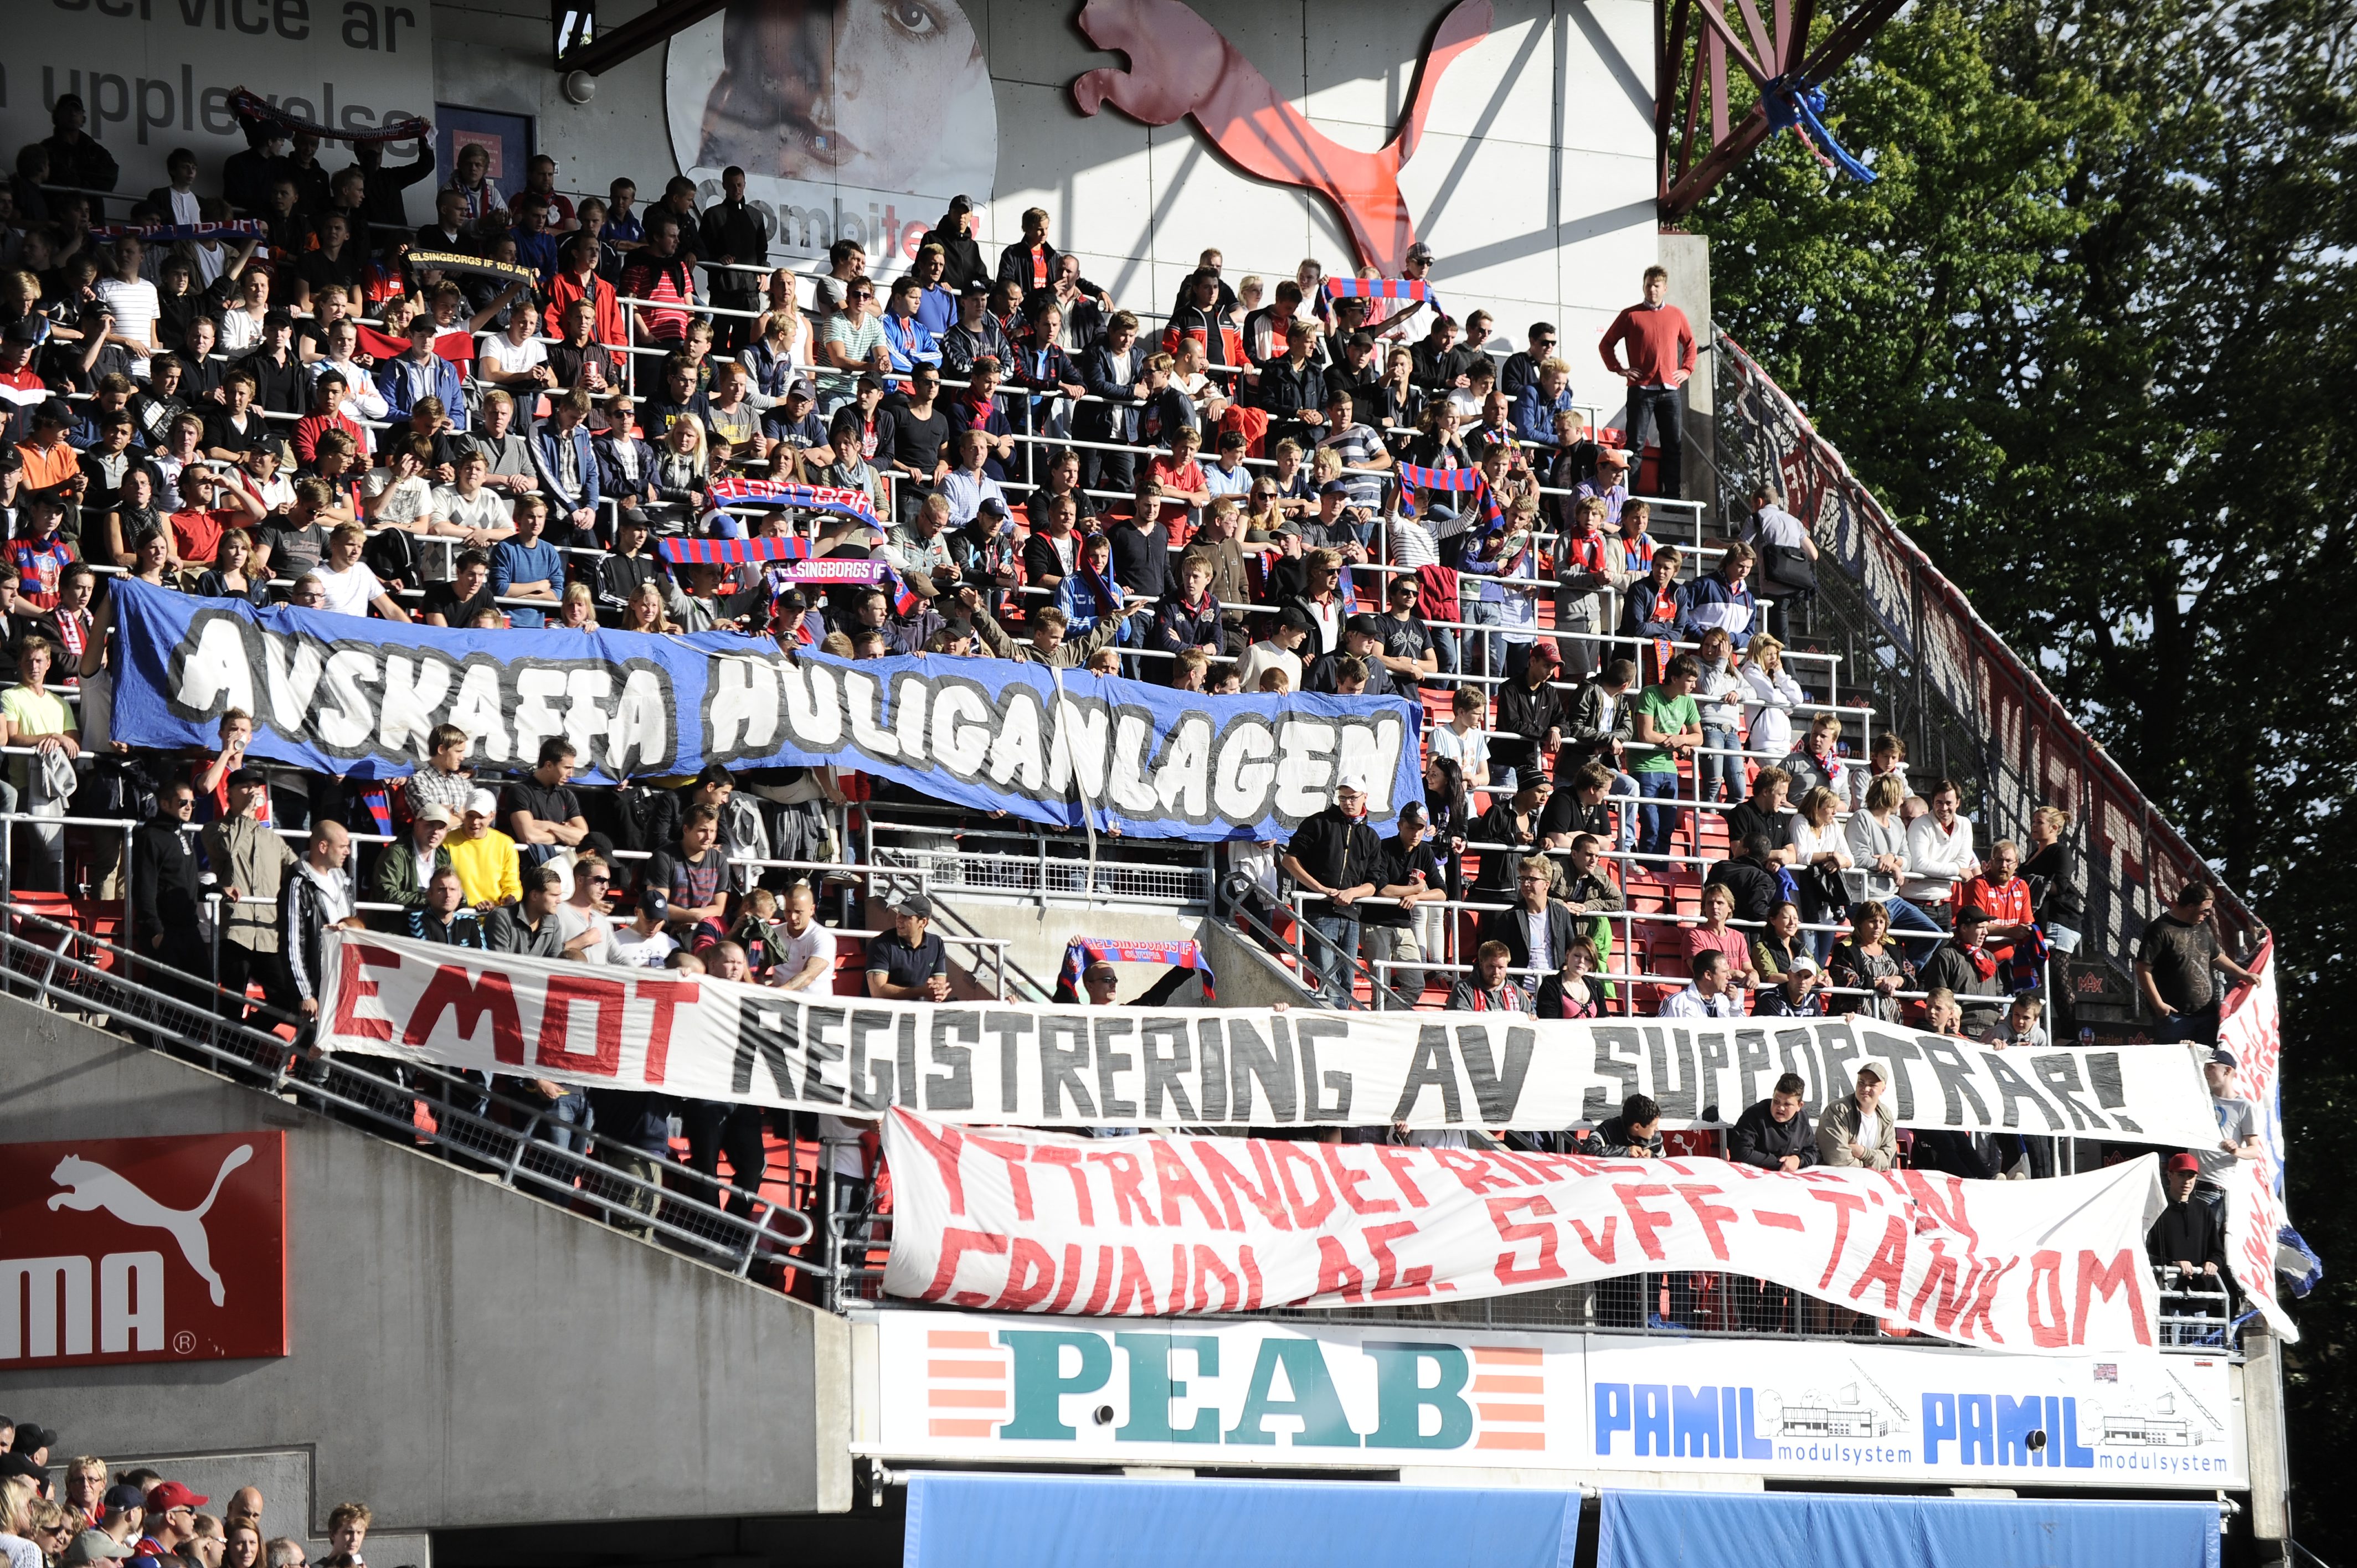 Även denna match höll Helsingsborgssupportrarna upp kritiska banderoller riktade mot Svenska fotbollförbundet.